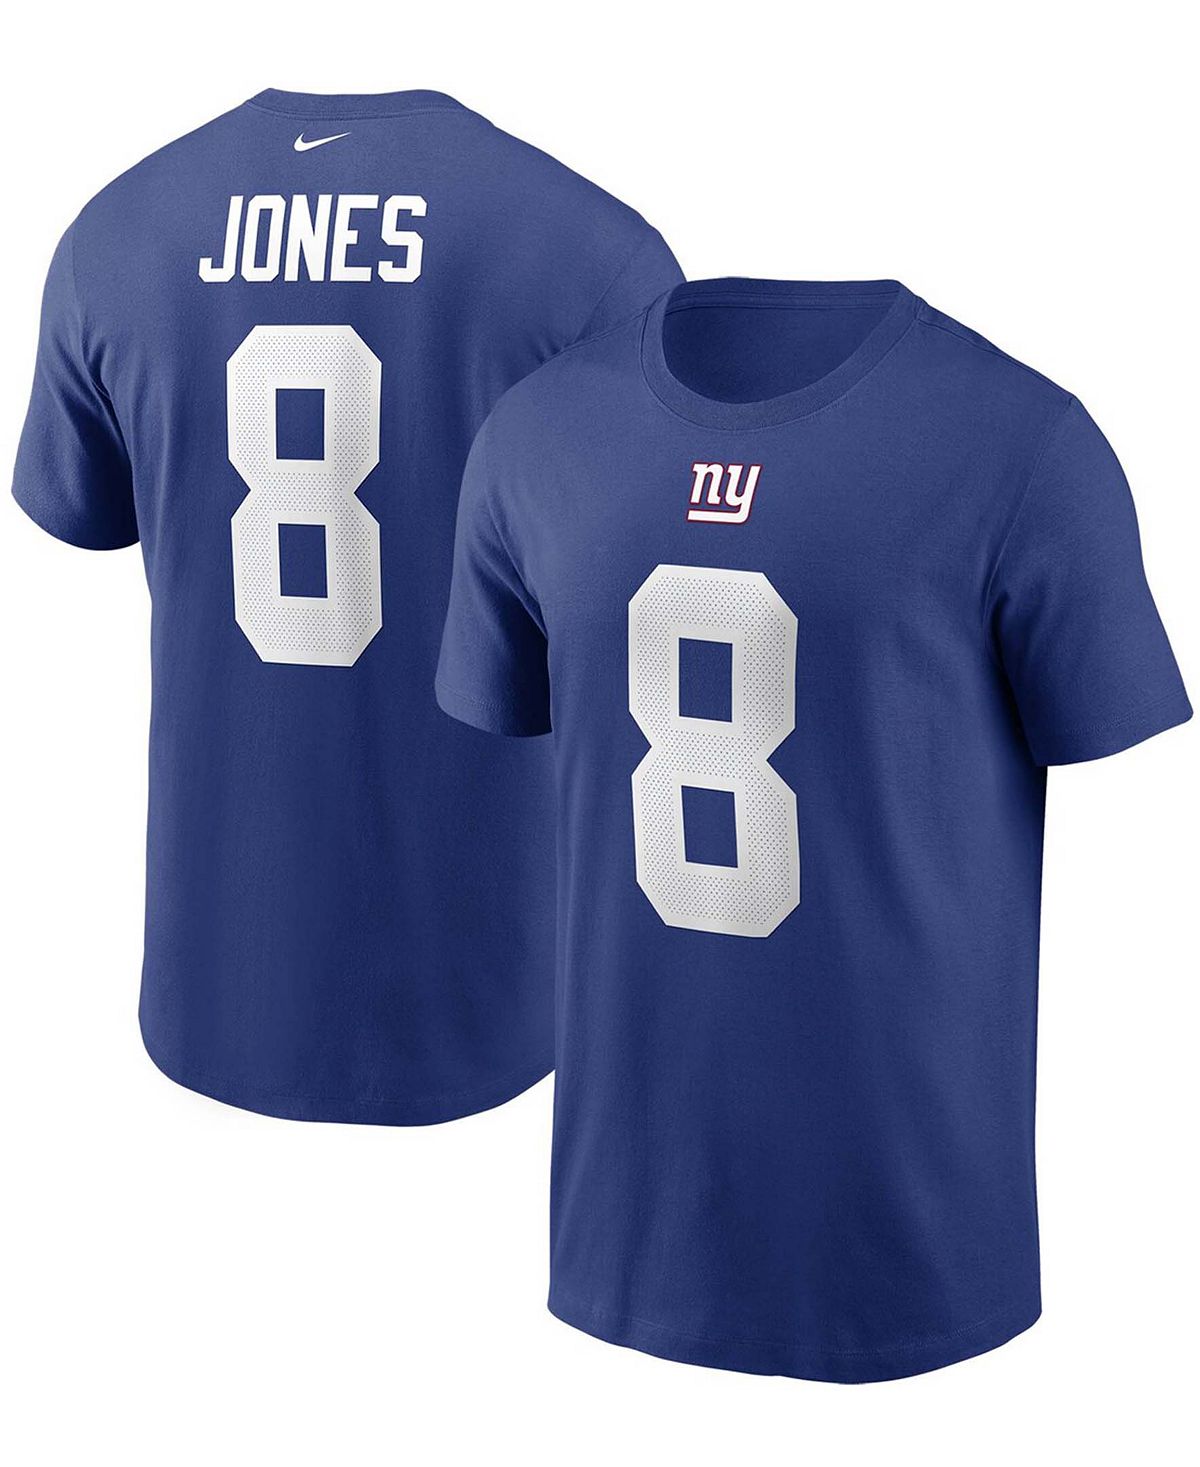 Мужская футболка с именем и номером Daniel Jones Royal New York Giants Nike женская водолазка из джерси с принтом jones new york черный